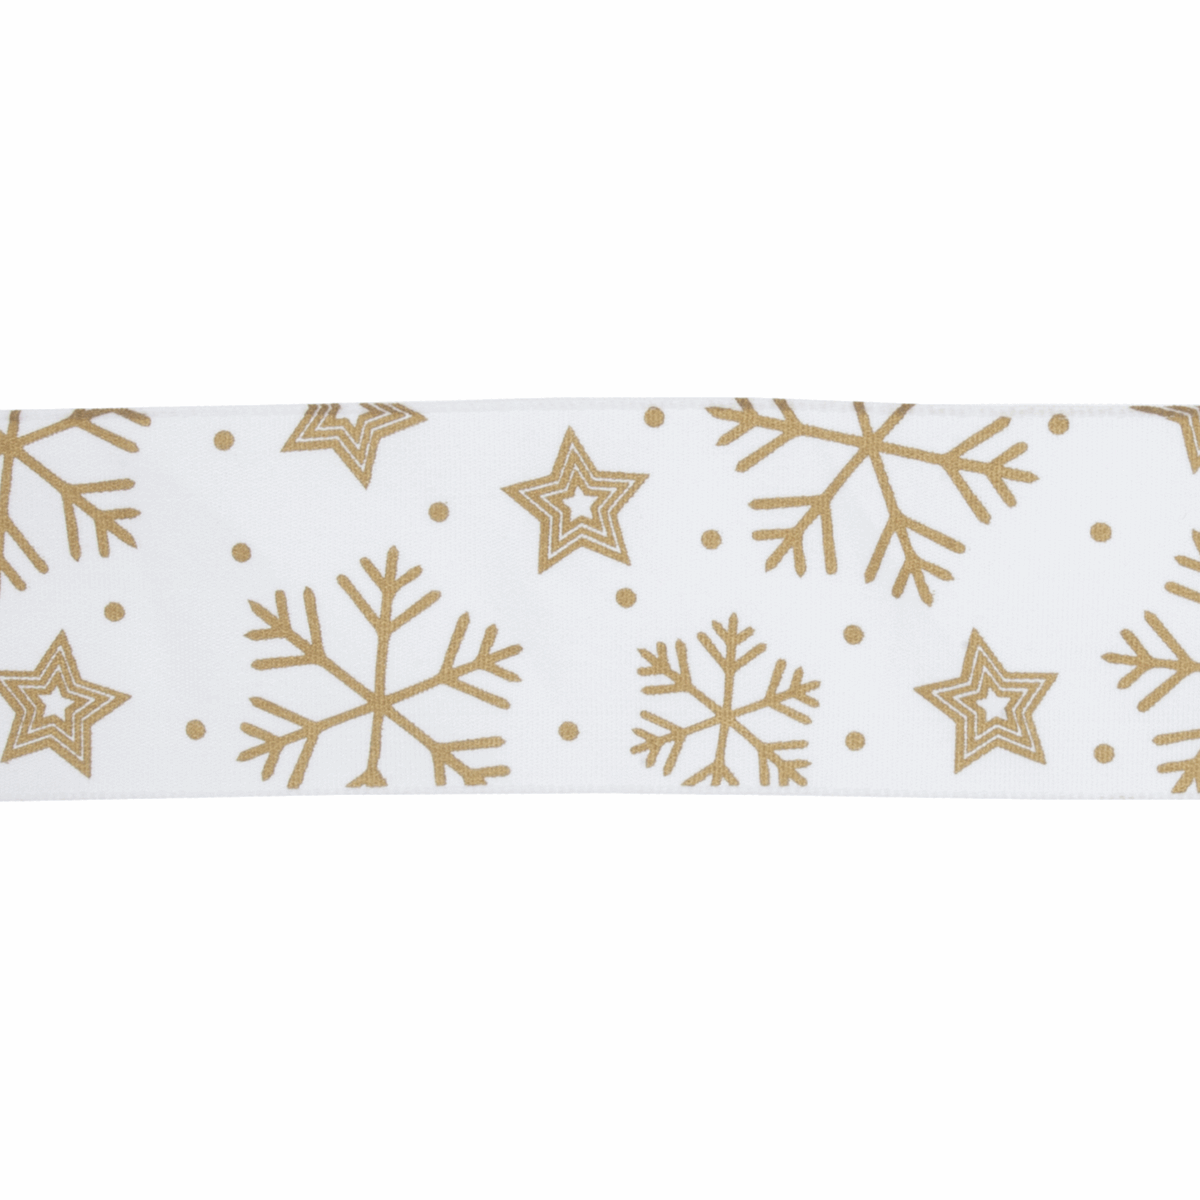 Taffeta Christmas Ribbon: 25m x 50mm: Metallic Snowflakes: Gold